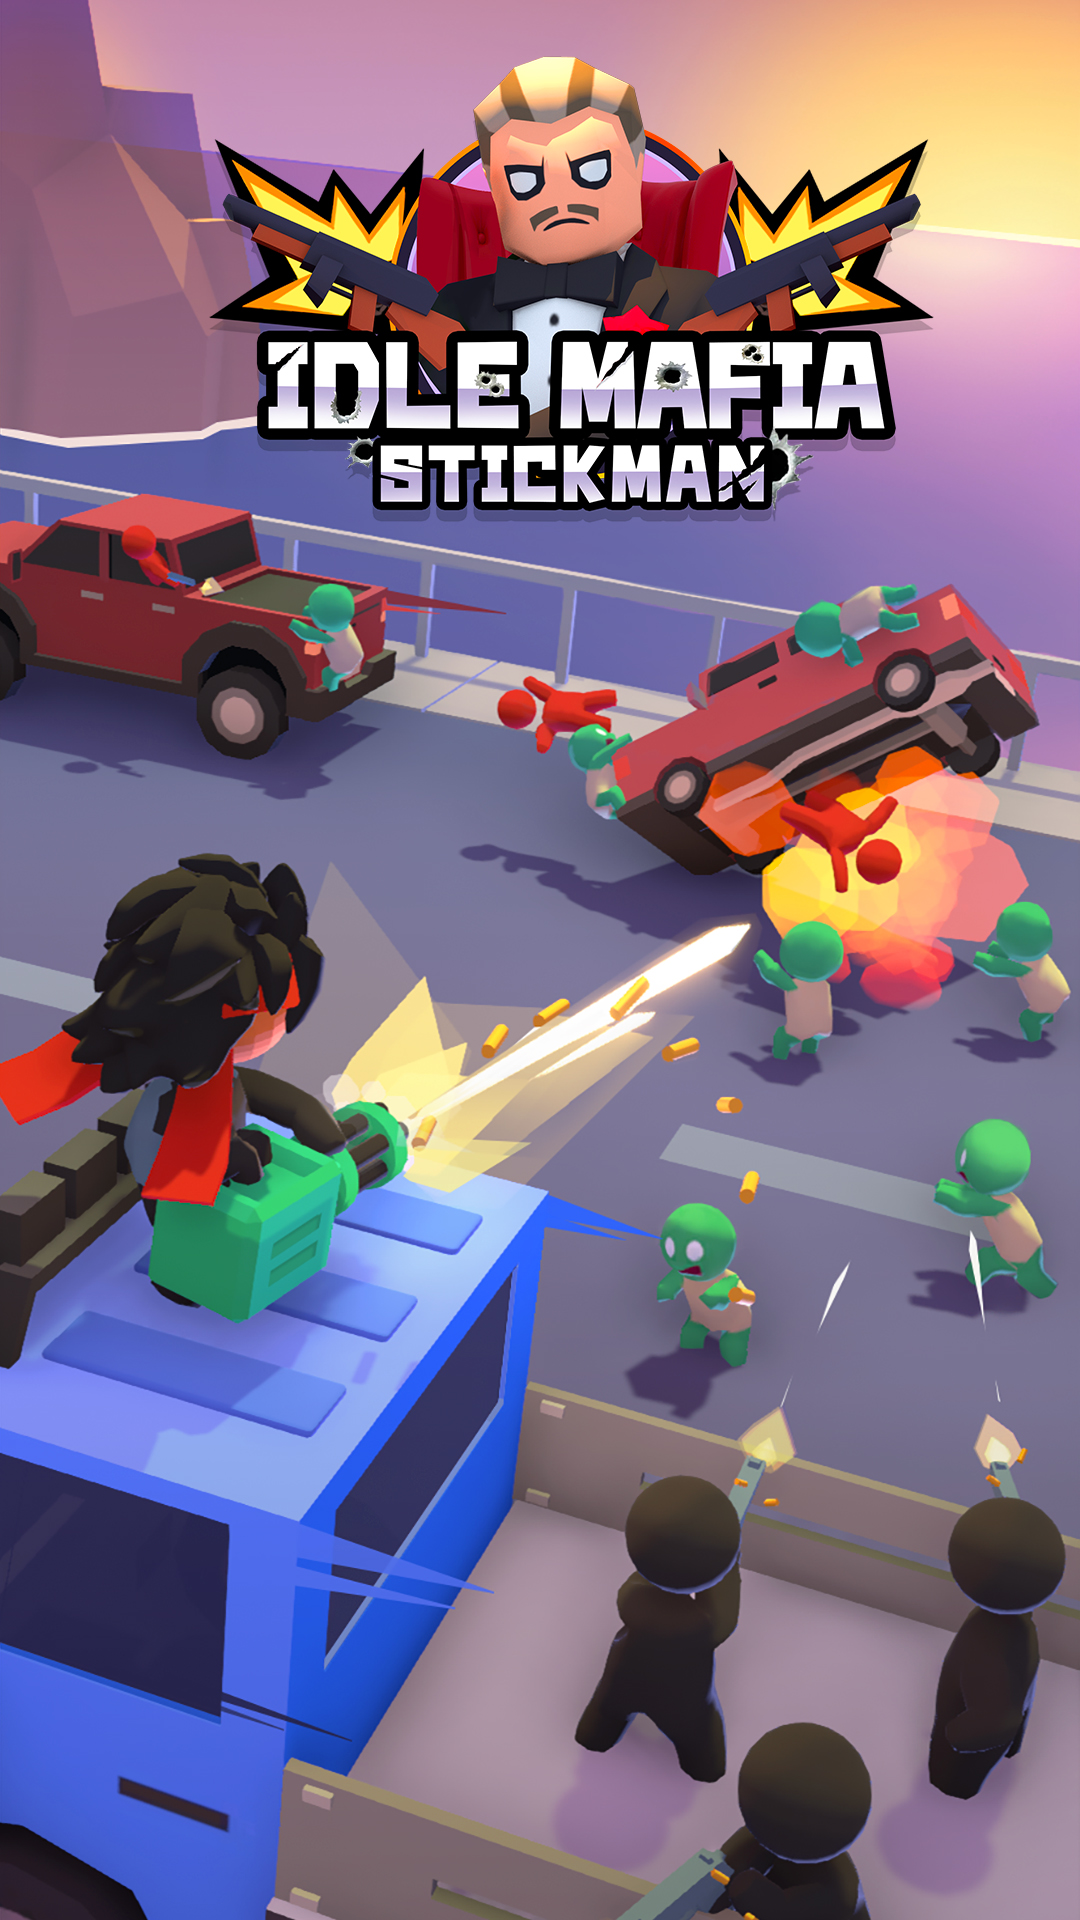 Ladda ner Stickman: Idle Mafia: Android Shooter spel till mobilen och surfplatta.